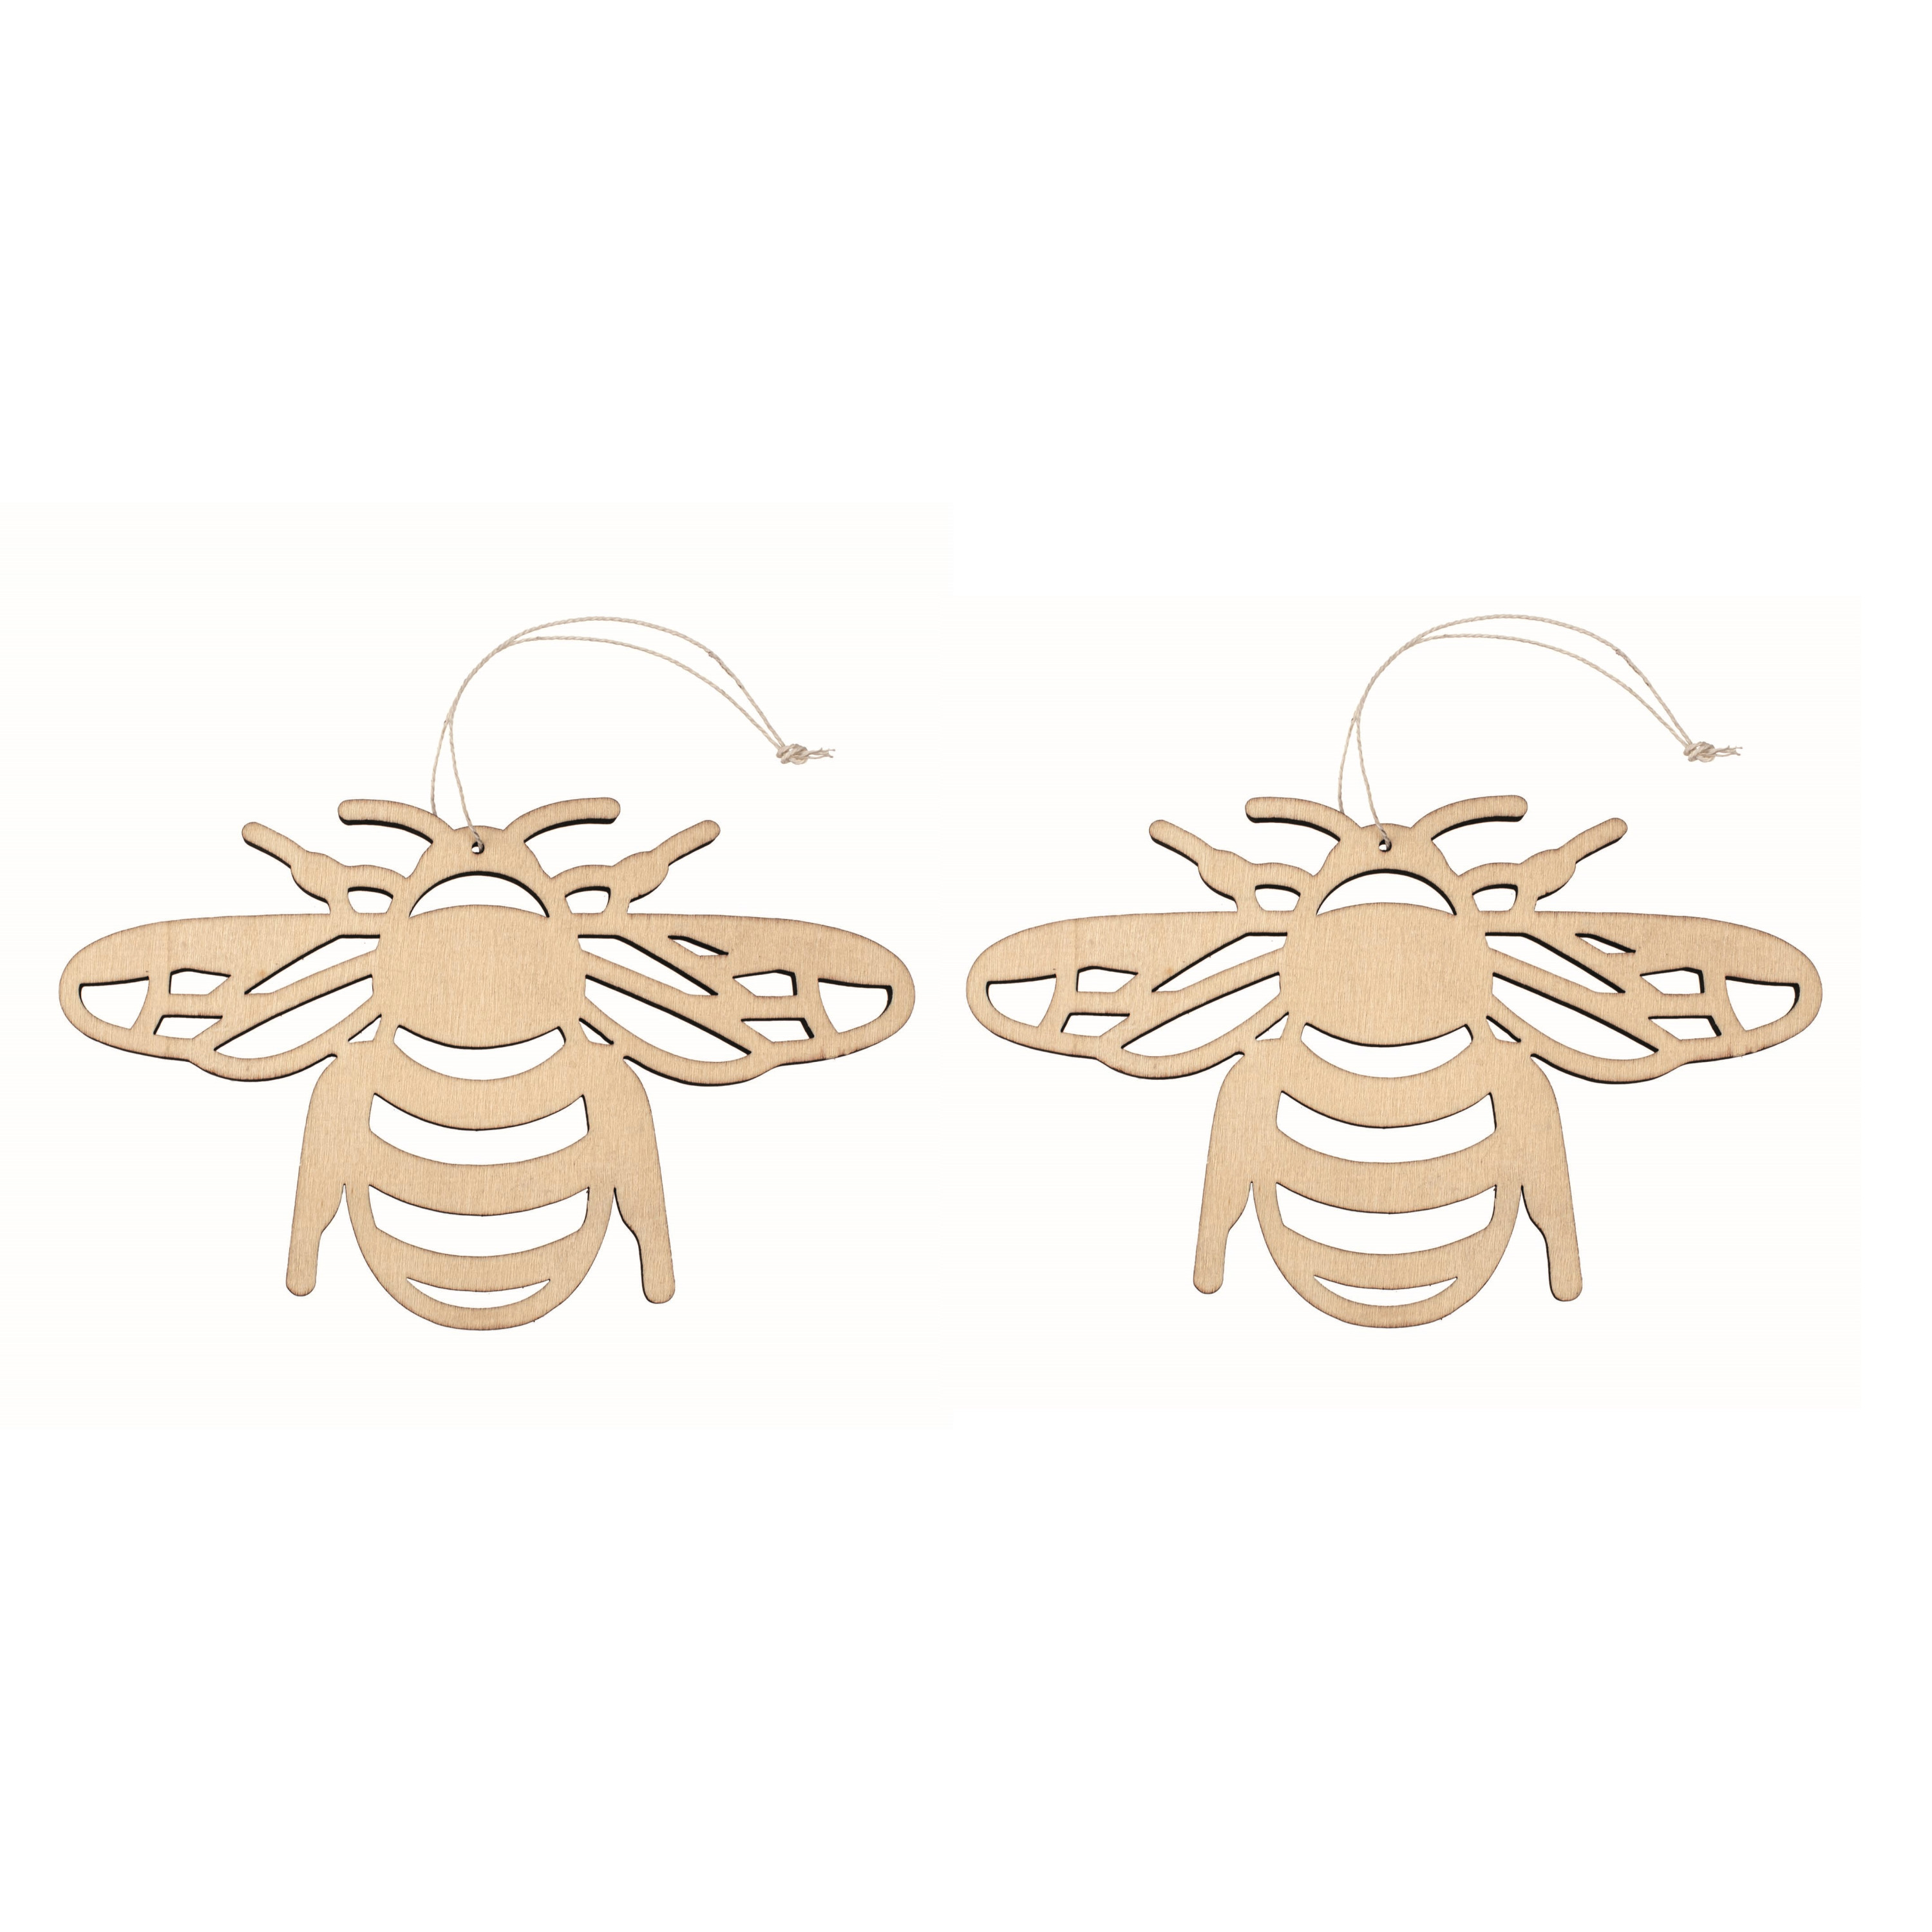 Set van 4x stuks houten dieren decoratie hangers van een honingbij van 12 x 19 cm